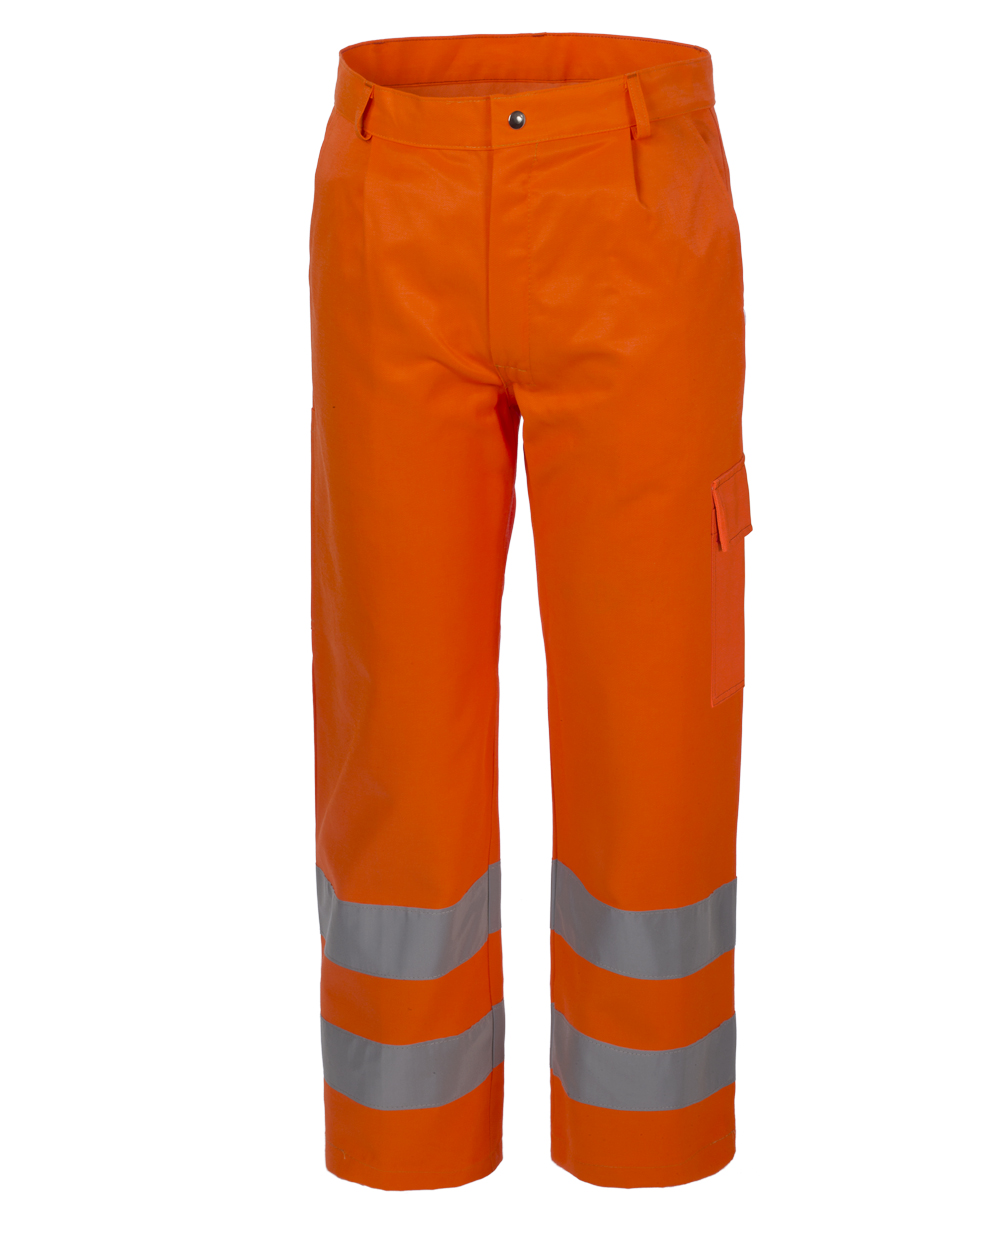 Pantalone Alta Visibilità c/bande 3M col.arancio